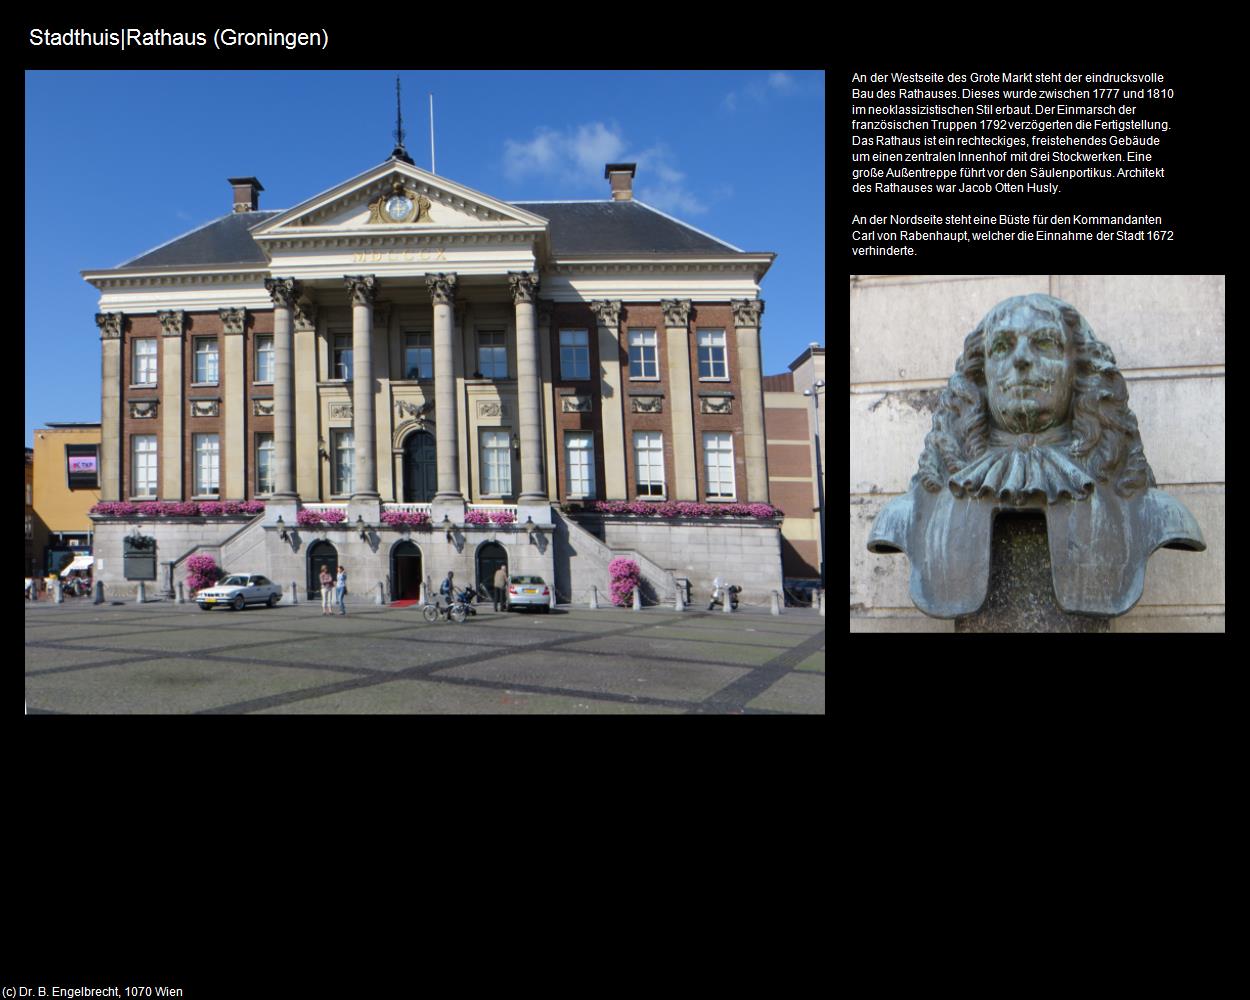 Stadthuis|Rathaus (Groningen) in Kulturatlas-NIEDERLANDE